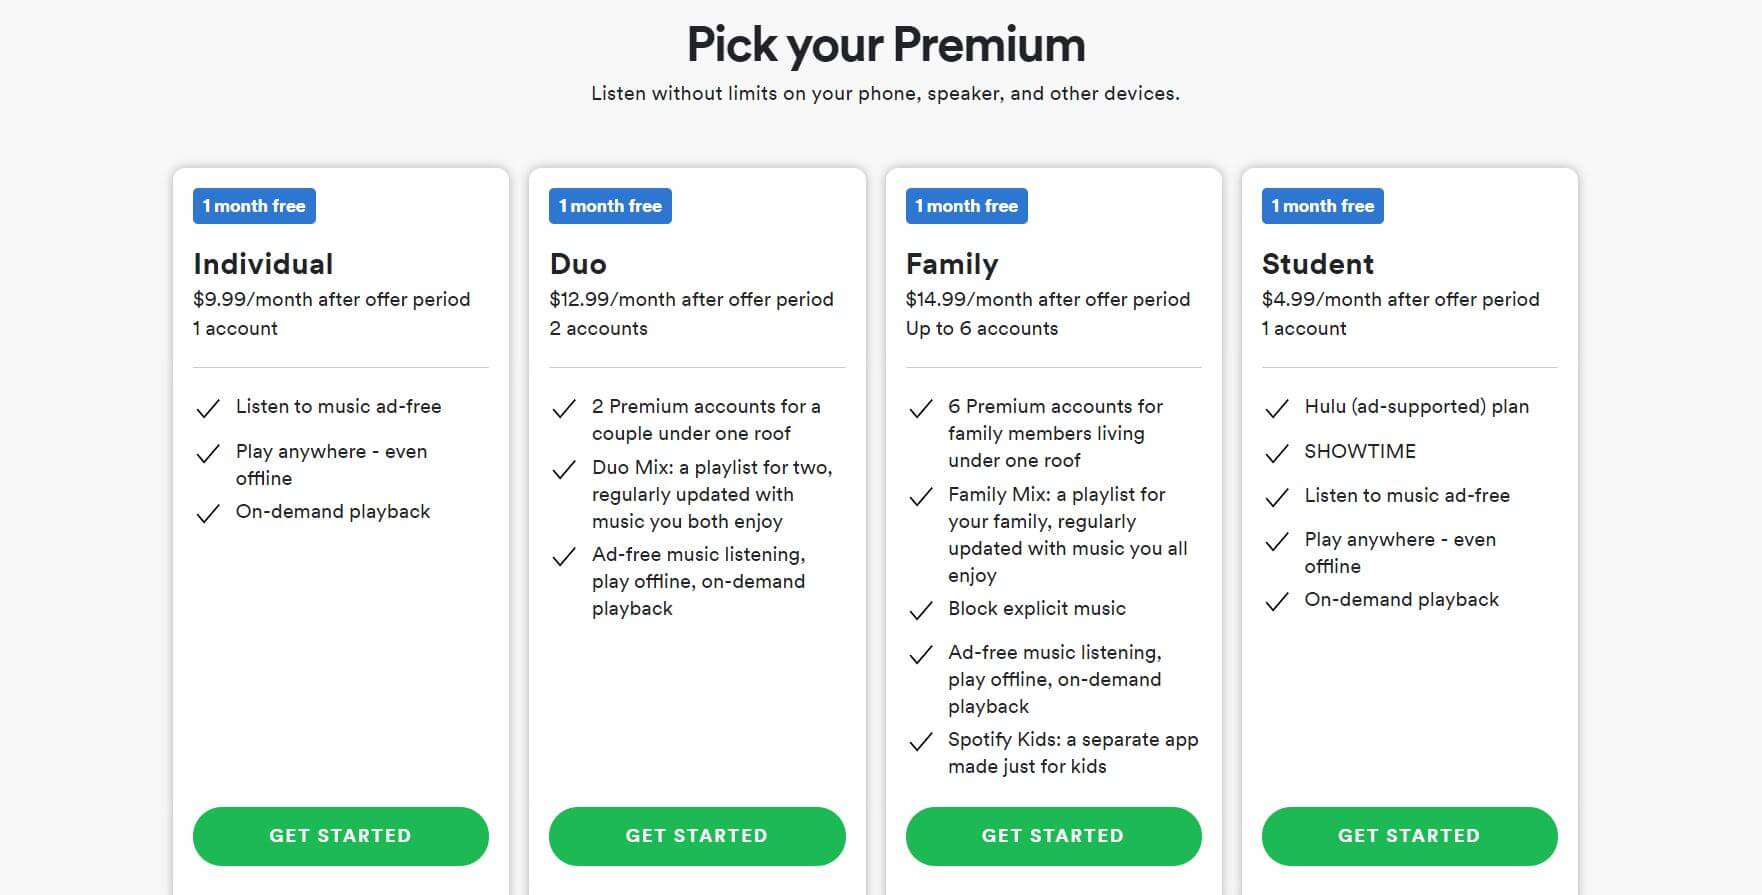 Pick Your Premium